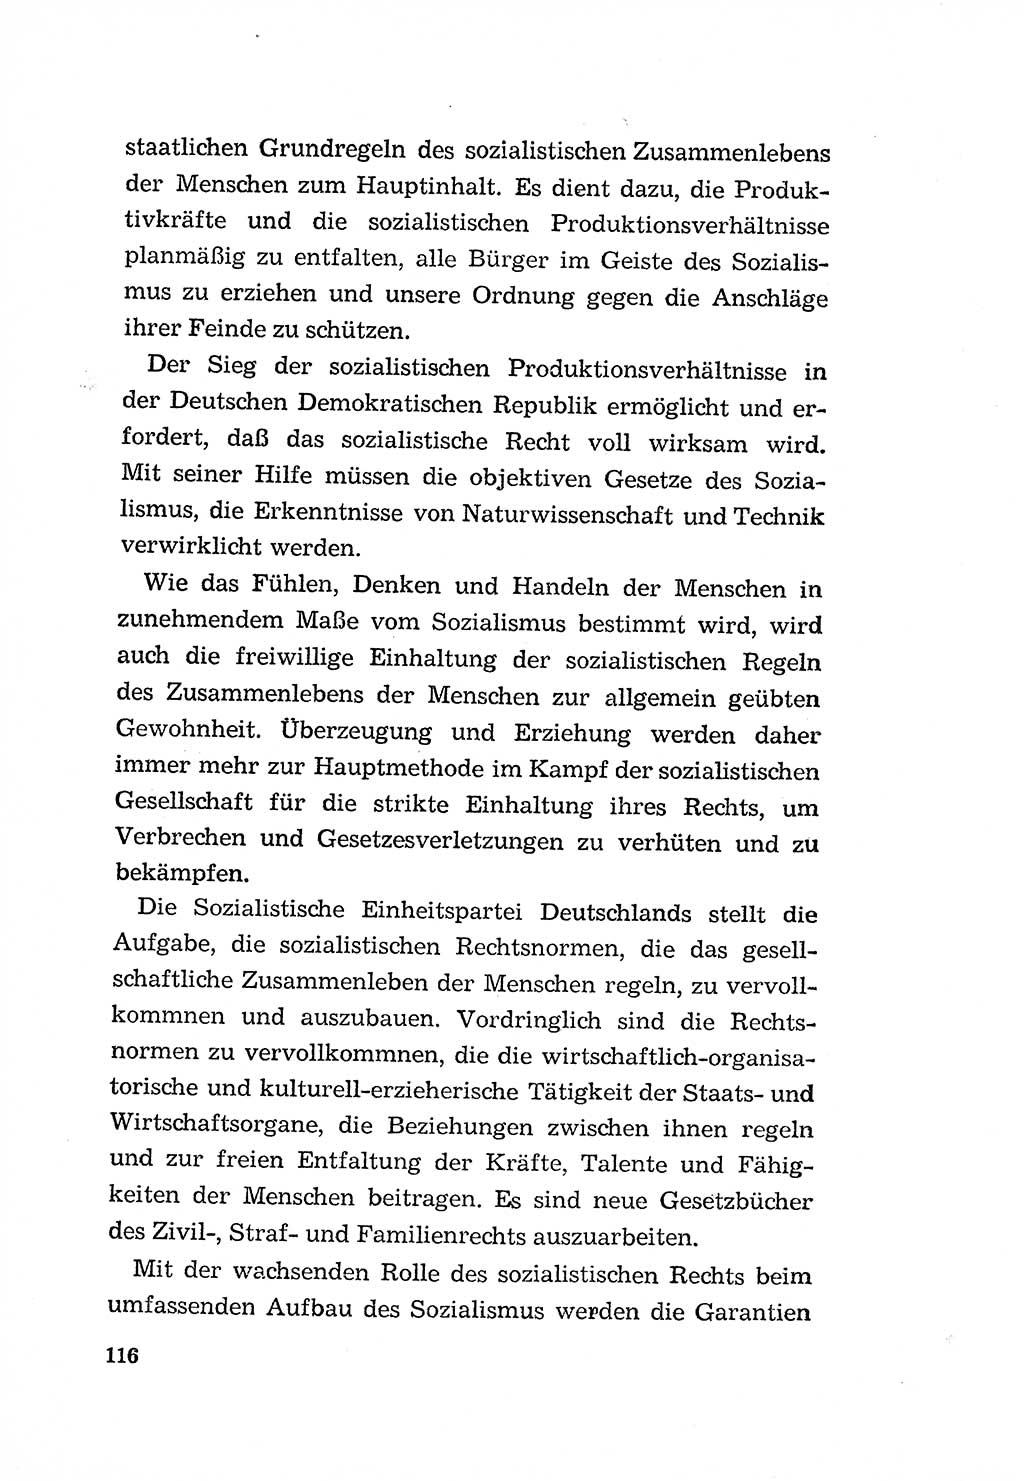 Programm der Sozialistischen Einheitspartei Deutschlands (SED) [Deutsche Demokratische Republik (DDR)] 1963, Seite 116 (Progr. SED DDR 1963, S. 116)